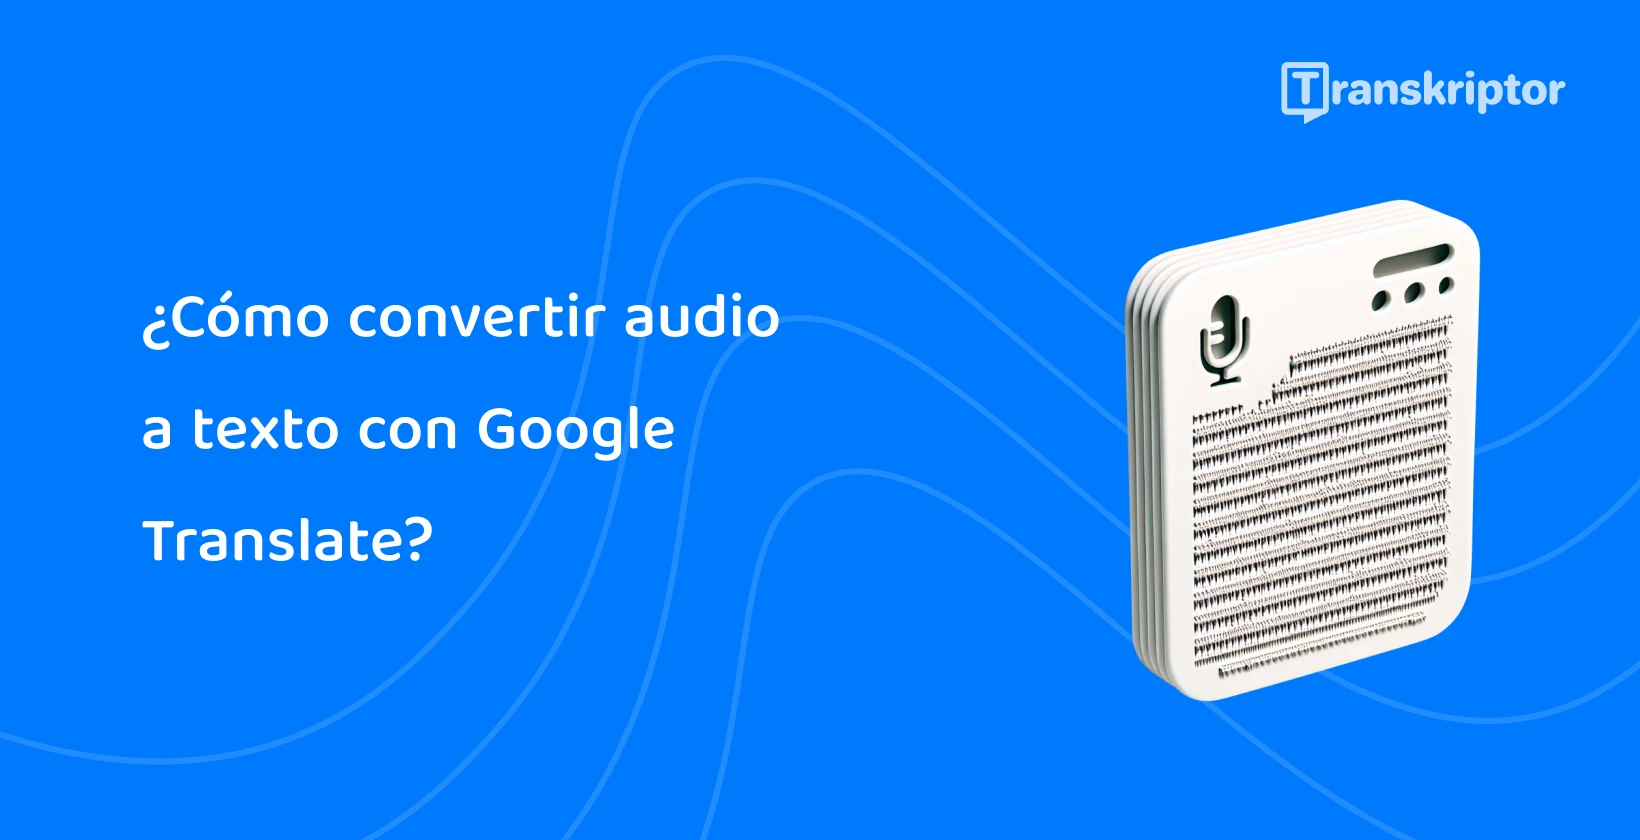 Ilustración de un archivo de audio en un dispositivo, que muestra la función de Google Translate para convertir voz en texto de manera eficiente.